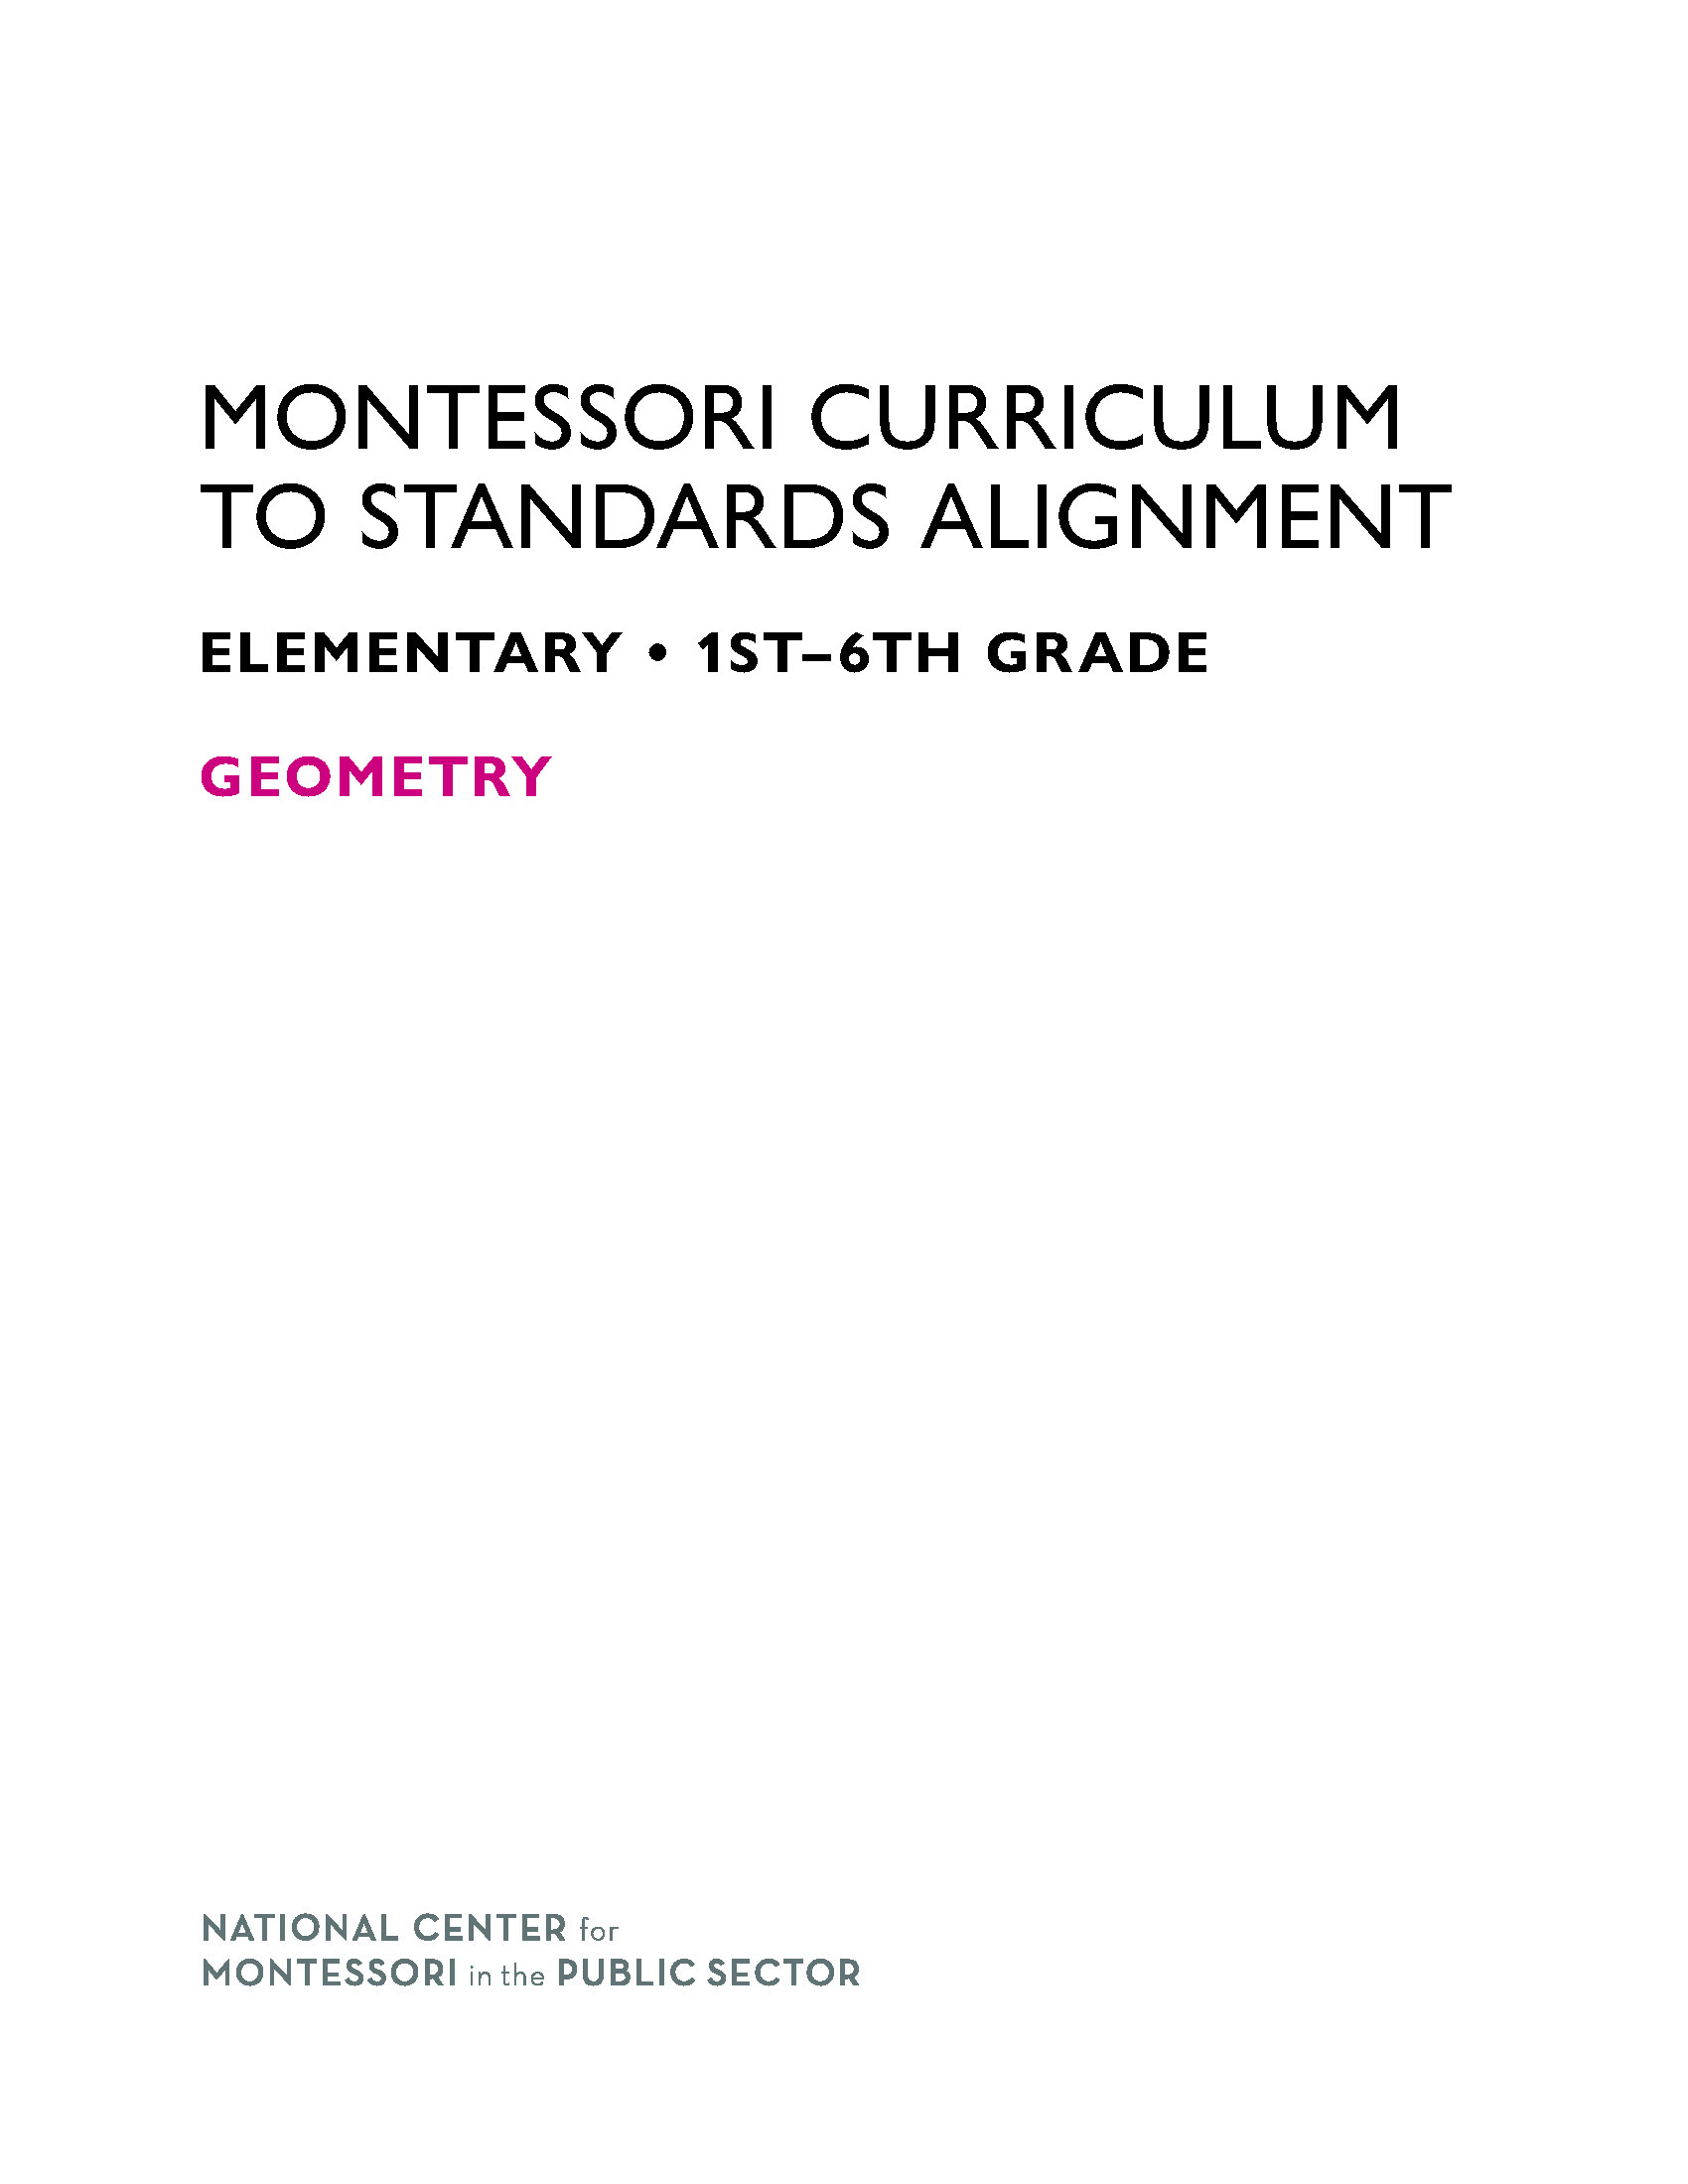 Montessori Curriculum to Standards Alignment Volume 1